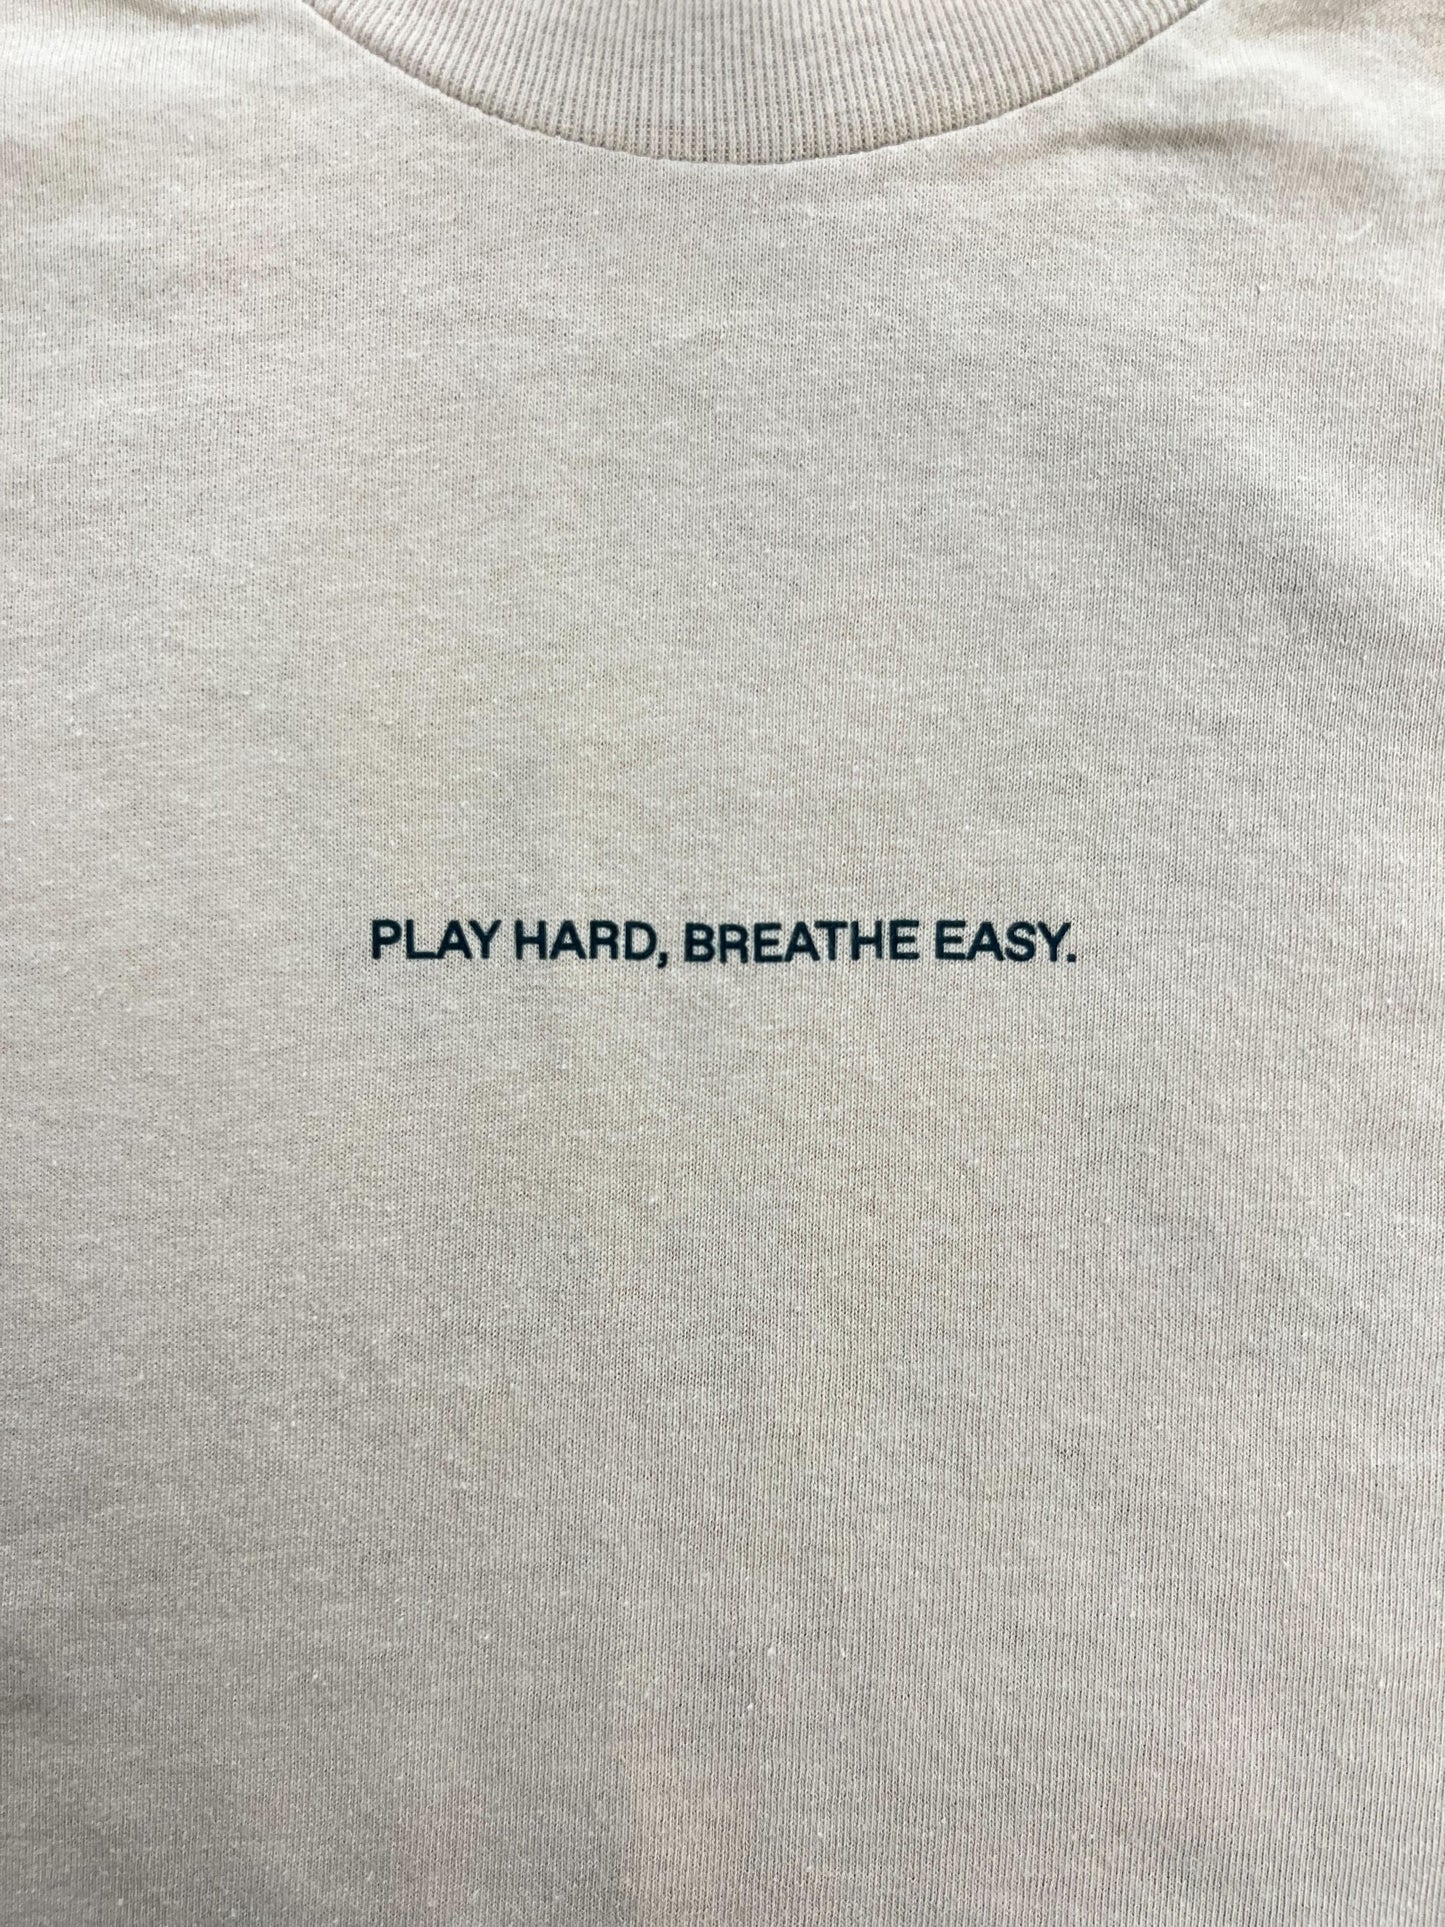 Clean Air T-Shirt (Natural)